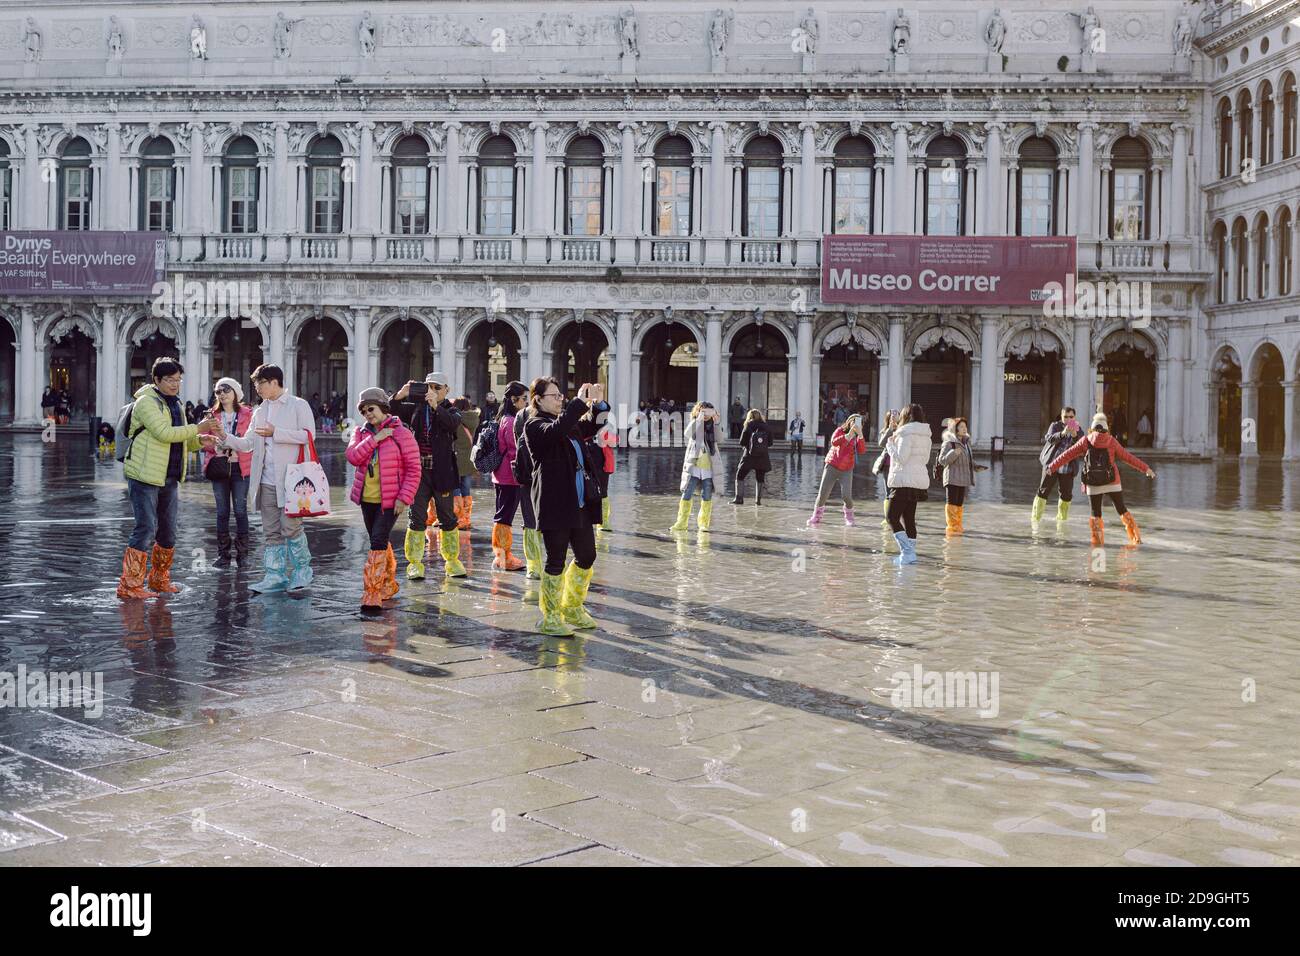 Turisti che scattano fotografie in Piazza San Marco con alta marea, acqua alta, con vista sulla San Marco Procuratie Foto Stock